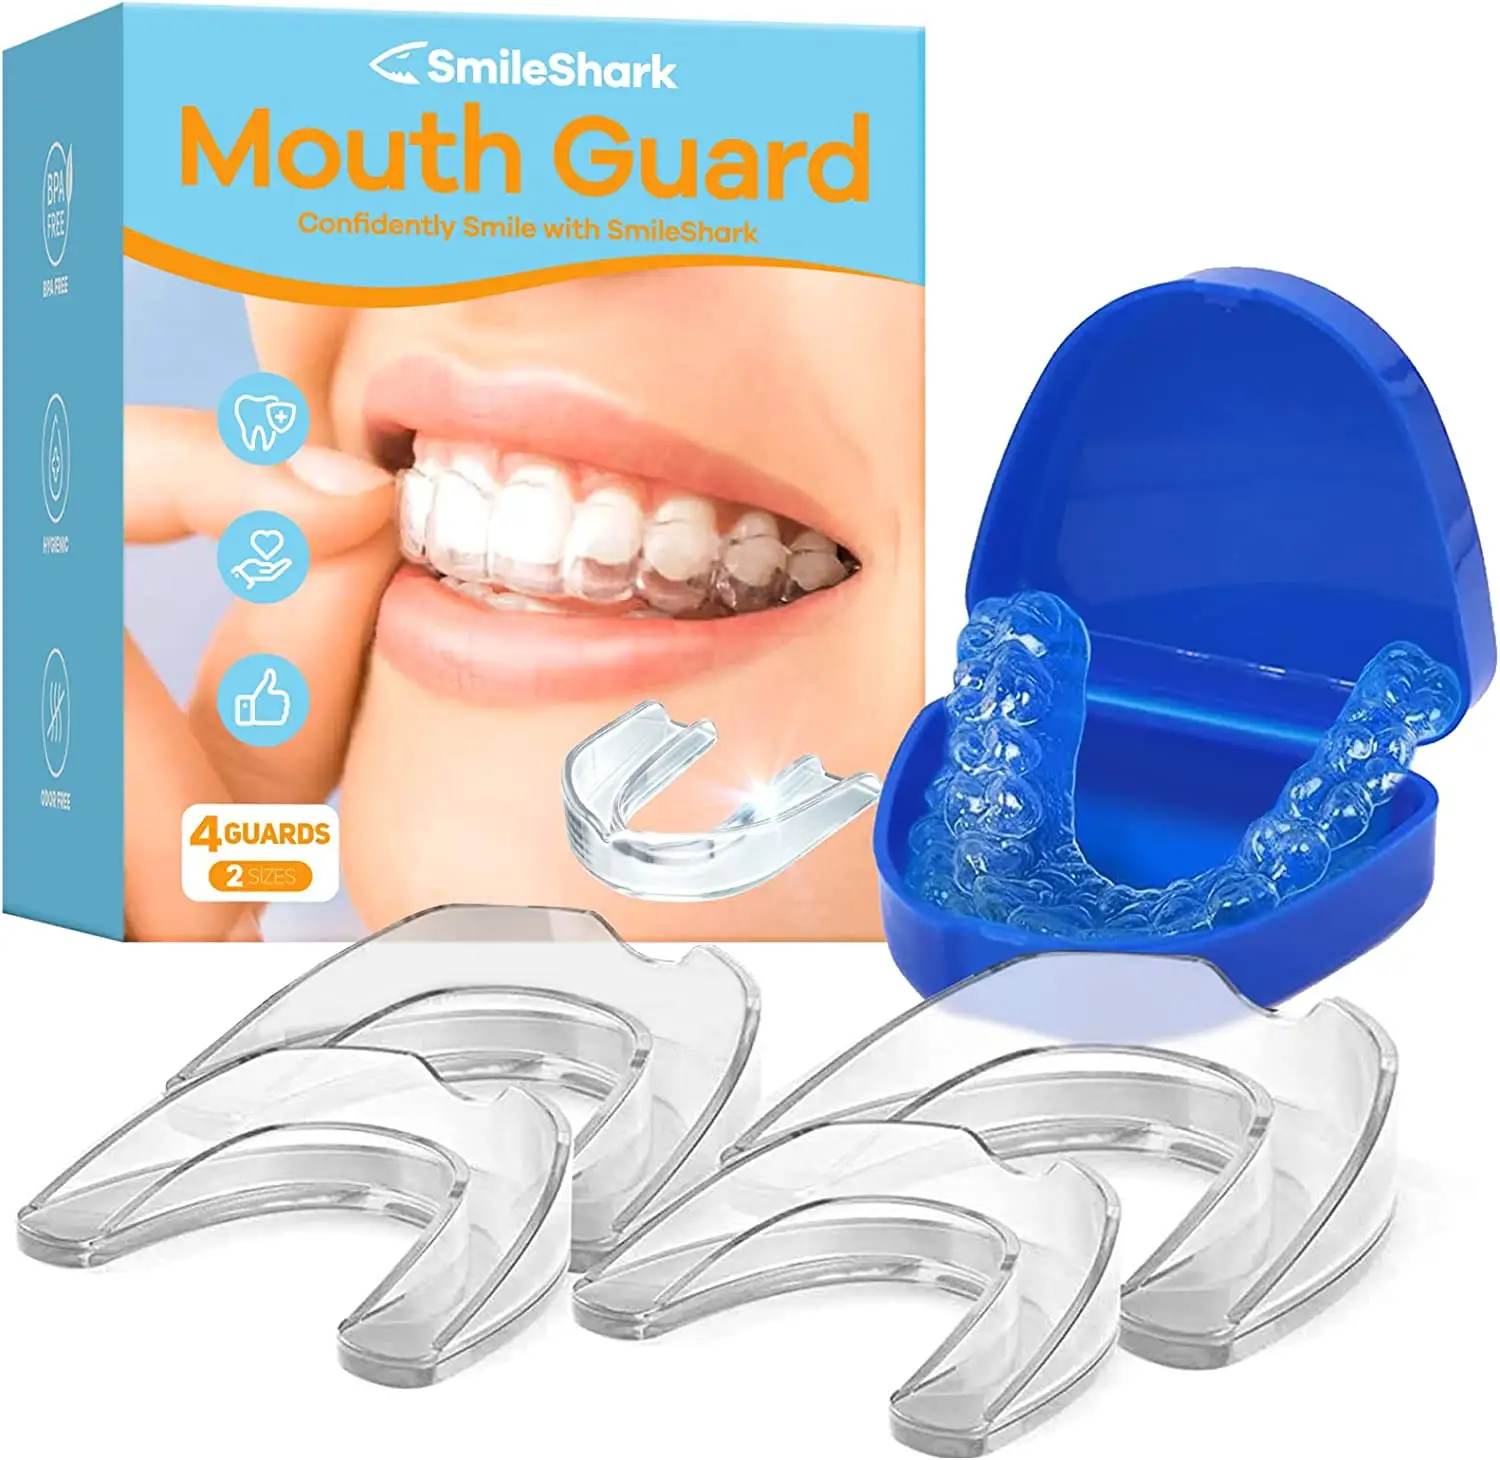 Protège-dents pour le grincement des dents, protège-dents de nuit contre le TMJ et le bruxisme, protège-dentaires professionnels, pour la bouche et les joues